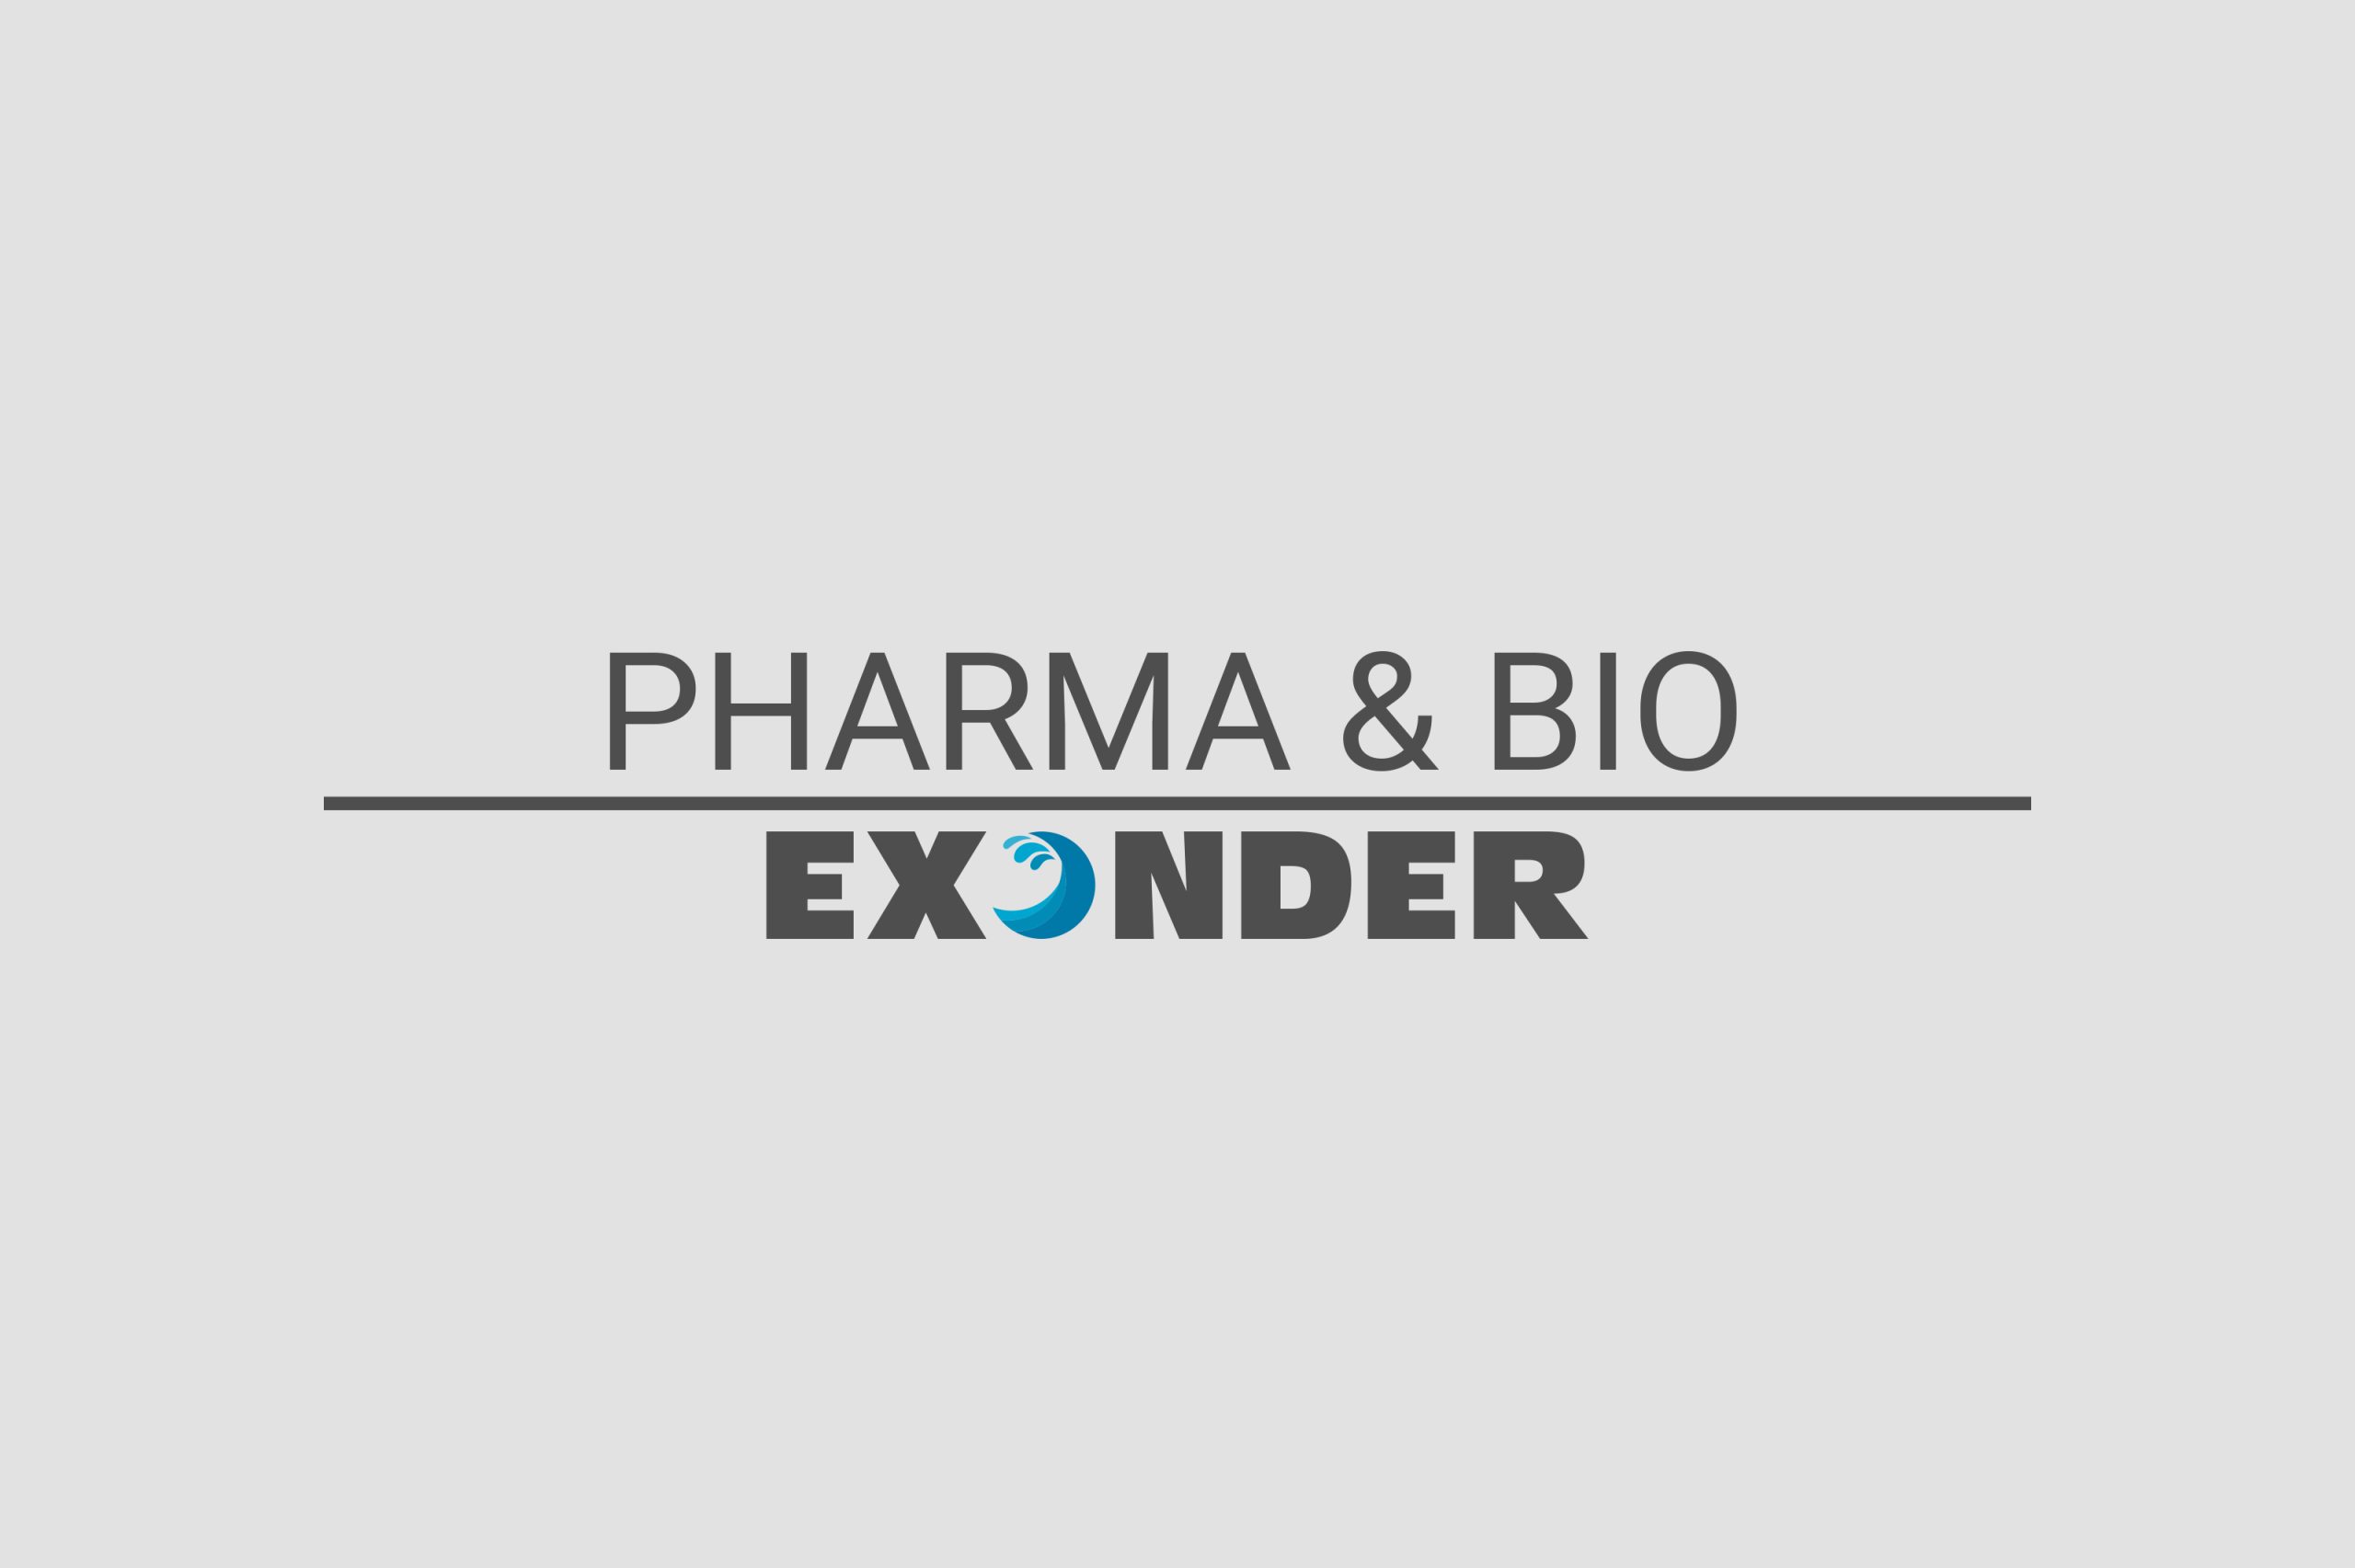 Pharma & Bio